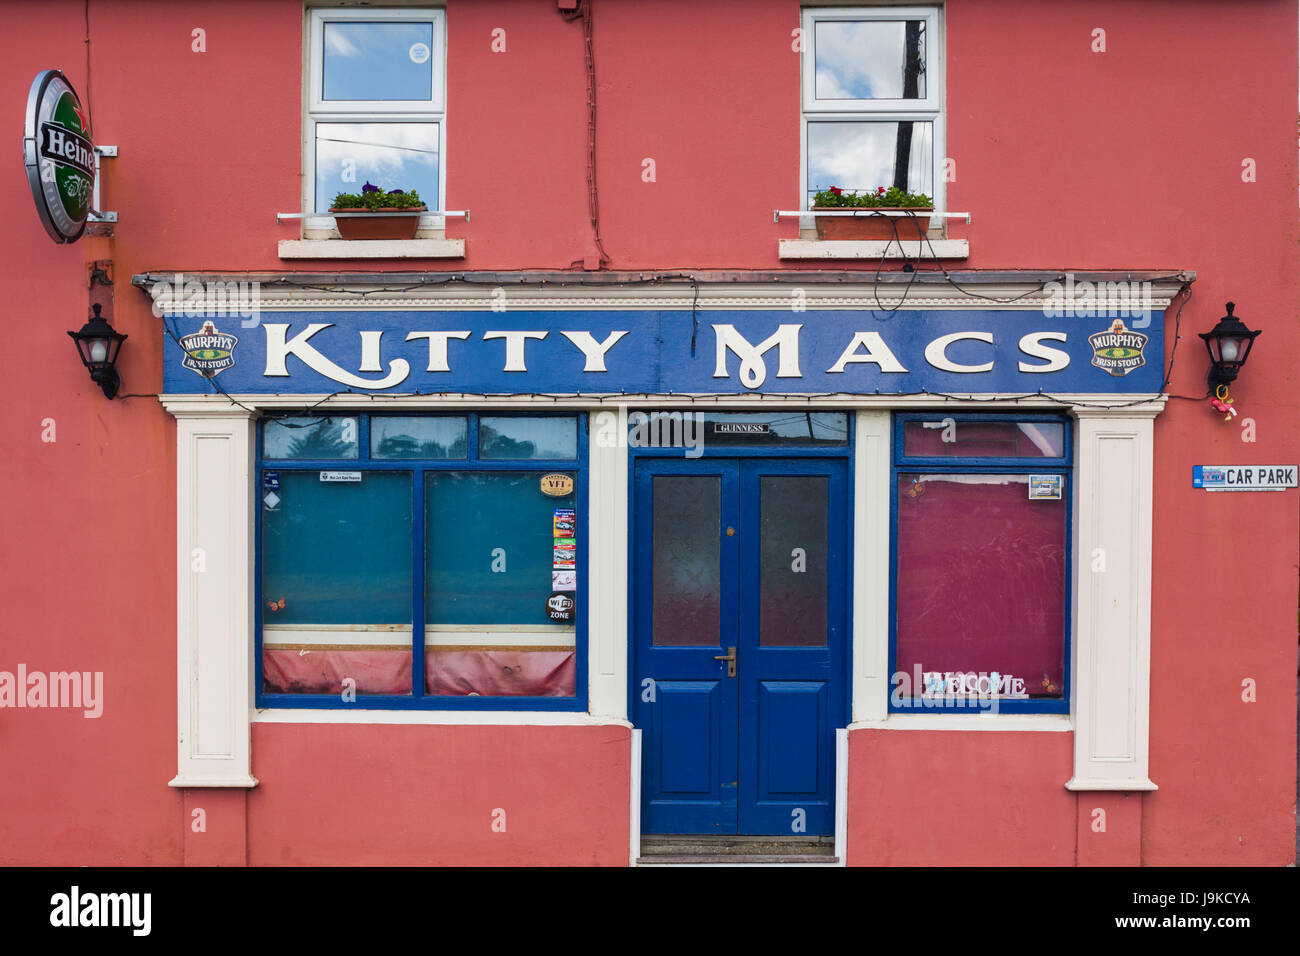 Ireland, County Cork, Ring, Kitty Macs Pub, exterior Stock Photo